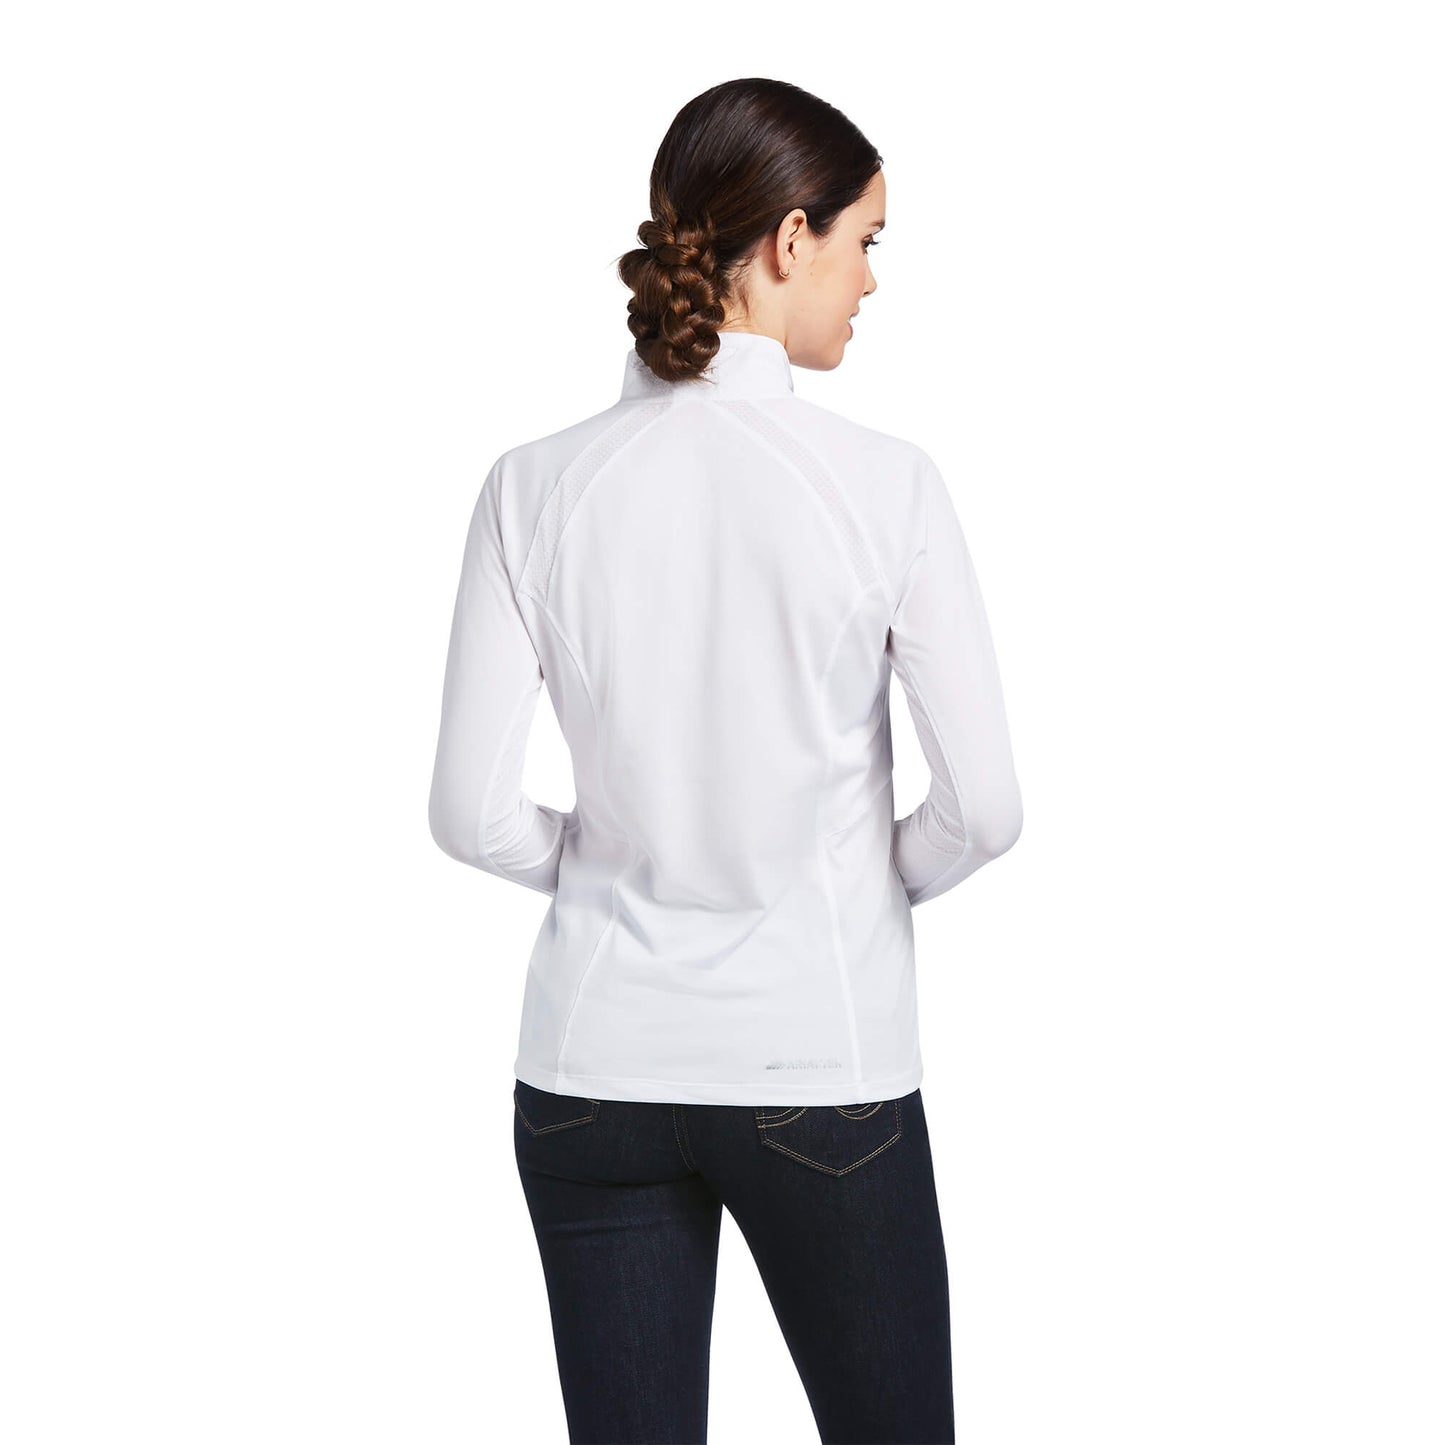 Sunstopper Training Shirt (Women)